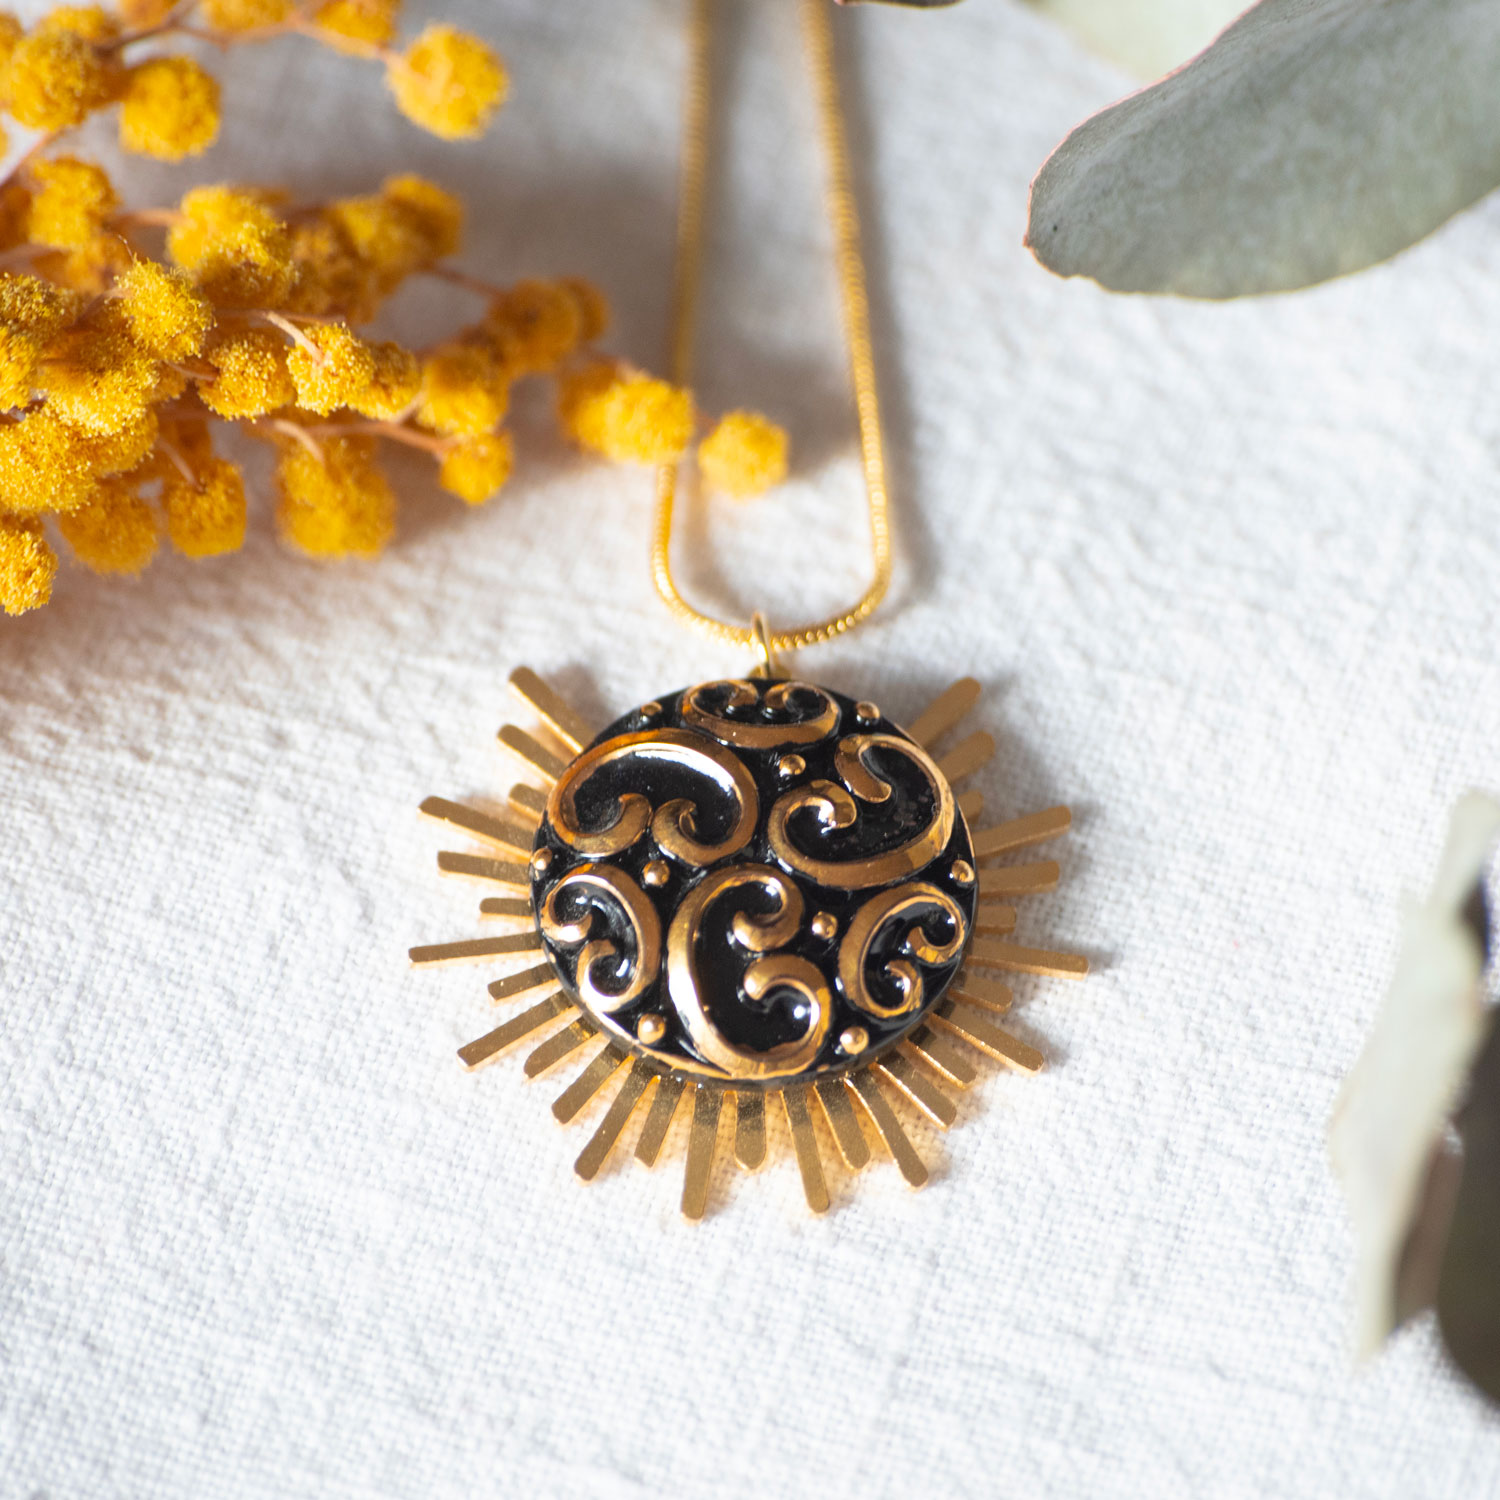 Assuna – Collier Solare Thelma – collier vintage bouton ancien des années 1920